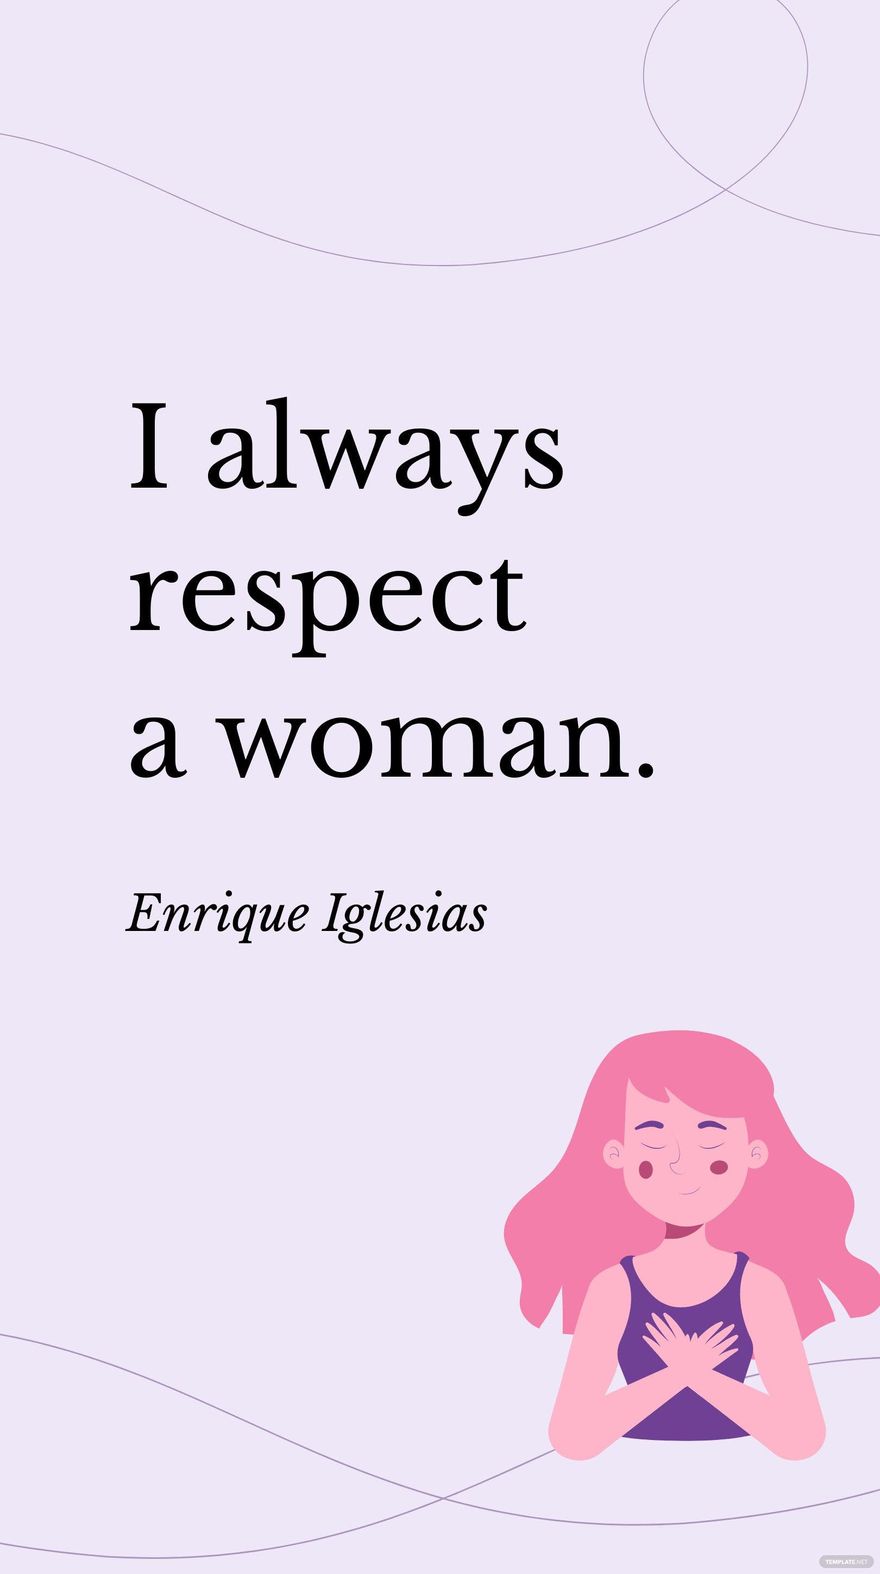 Enrique Iglesias - I always respect a woman.